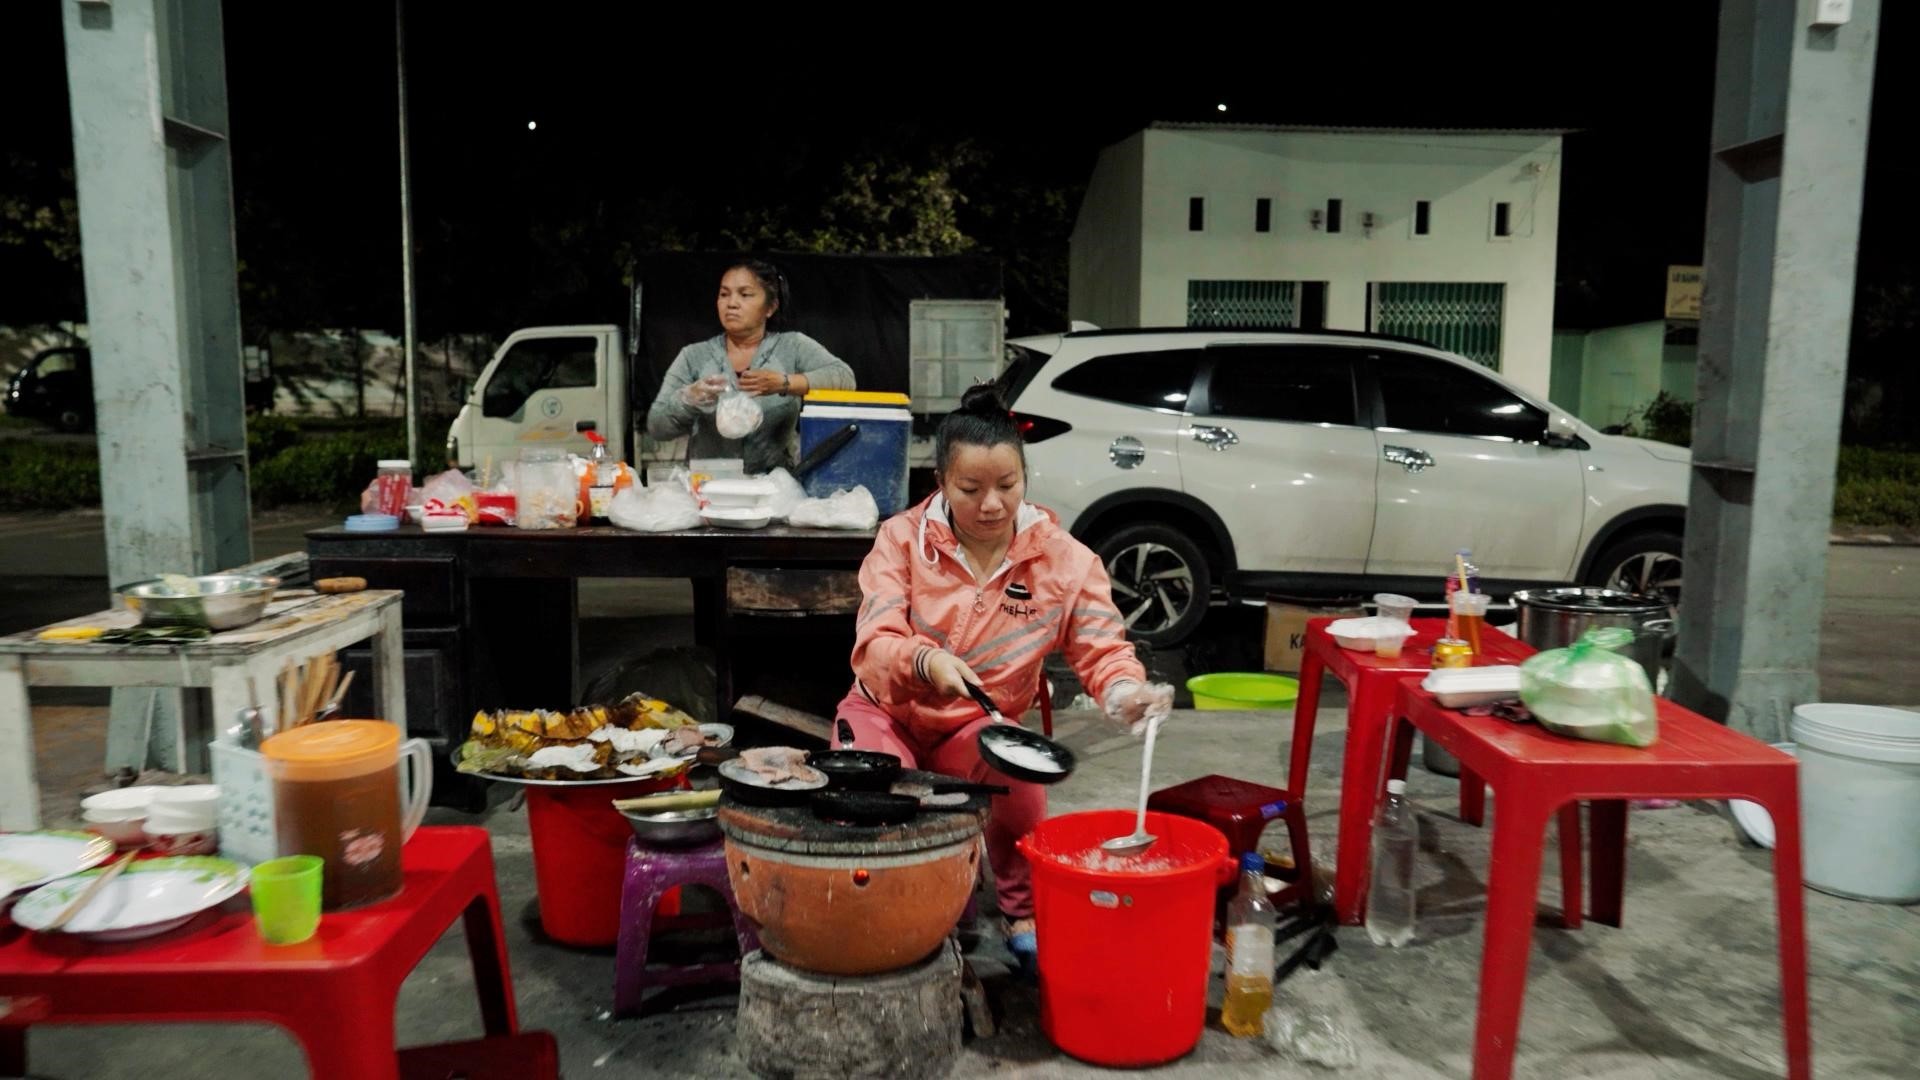 Nhờ nguồn vốn vay từ F88, chị Nguyễn Thị Bạch Huệ đã mở quán ăn của riêng mình tại chợ Đầu mối phía Nam thành phố Kon Tum.